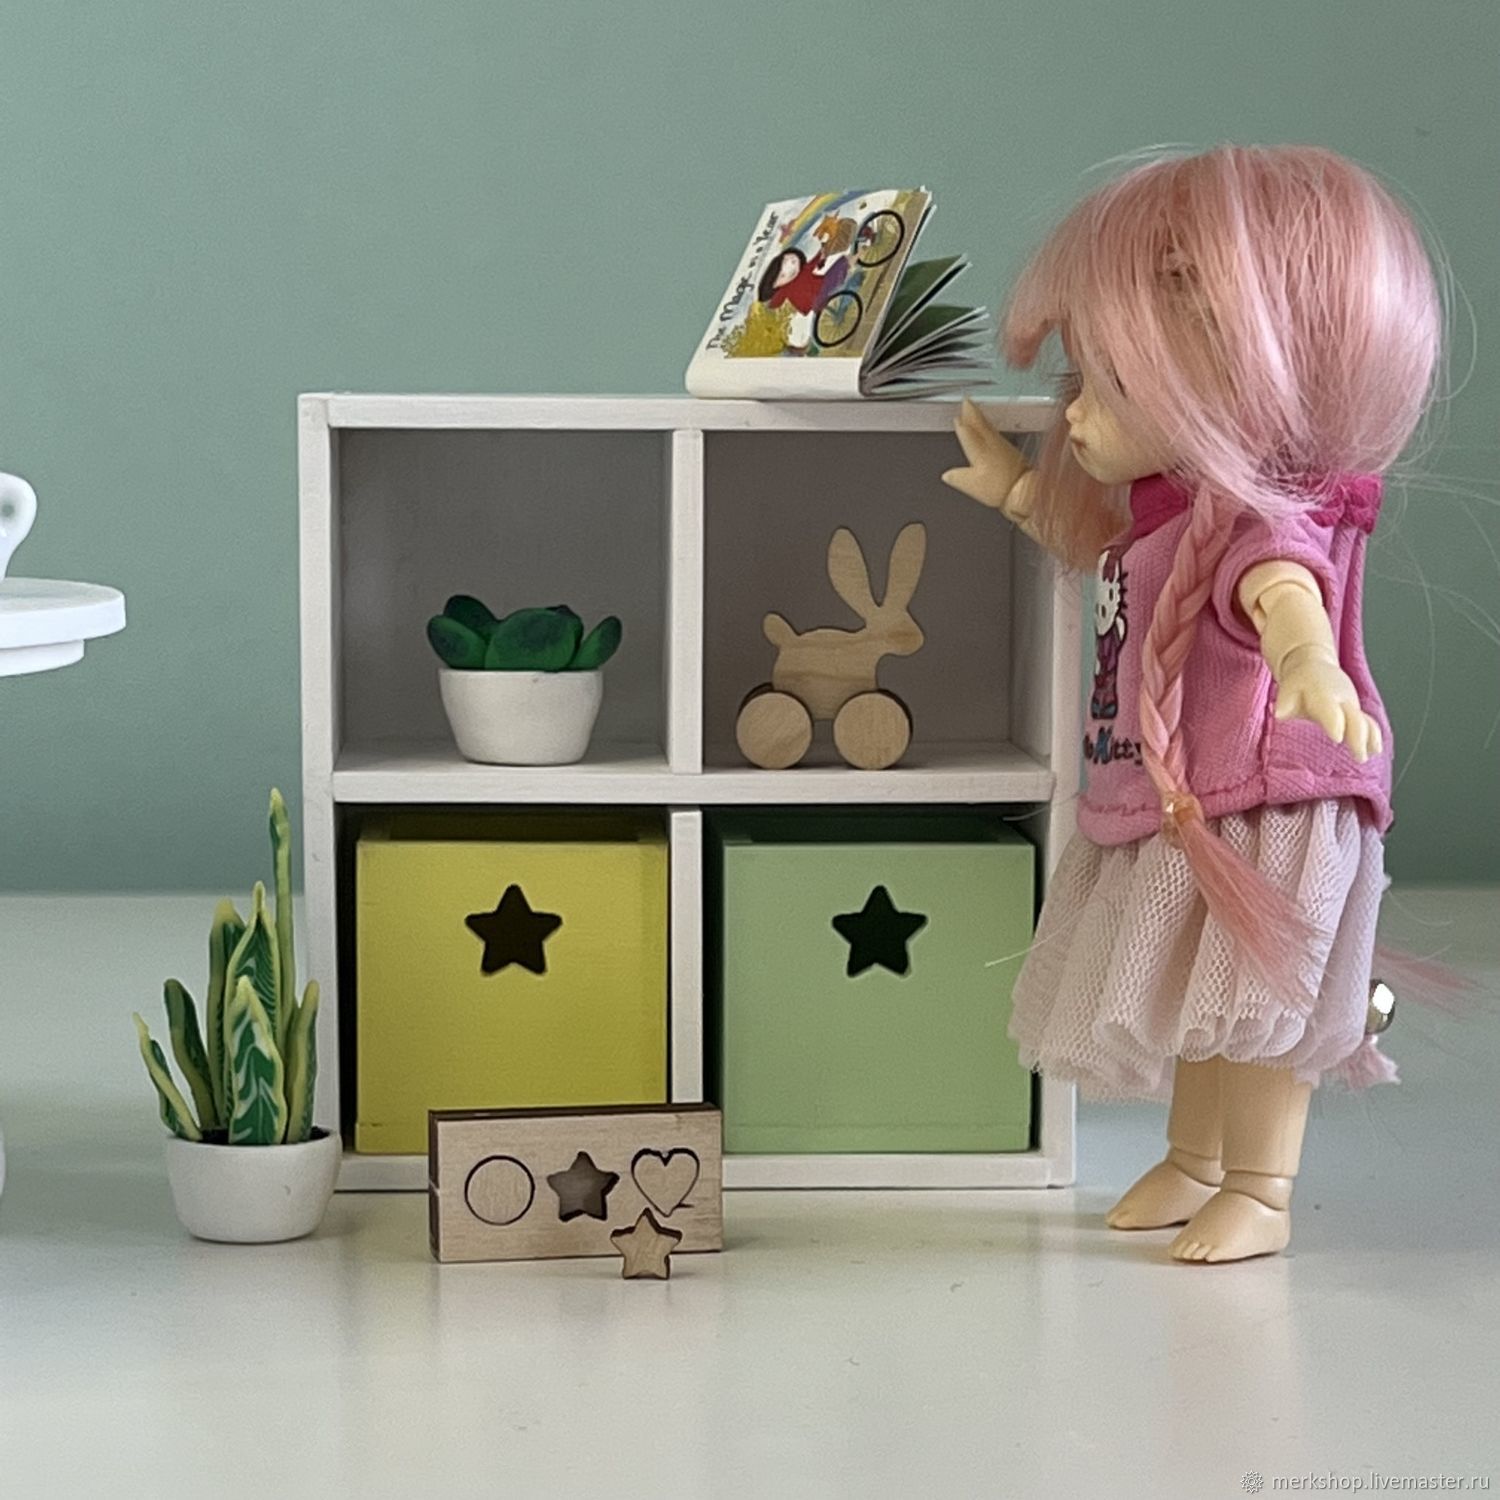 Шкаф кукольный дом мебель для кукол лол подарок девочке, Мебель для кукол, Челябинск,  Фото №1